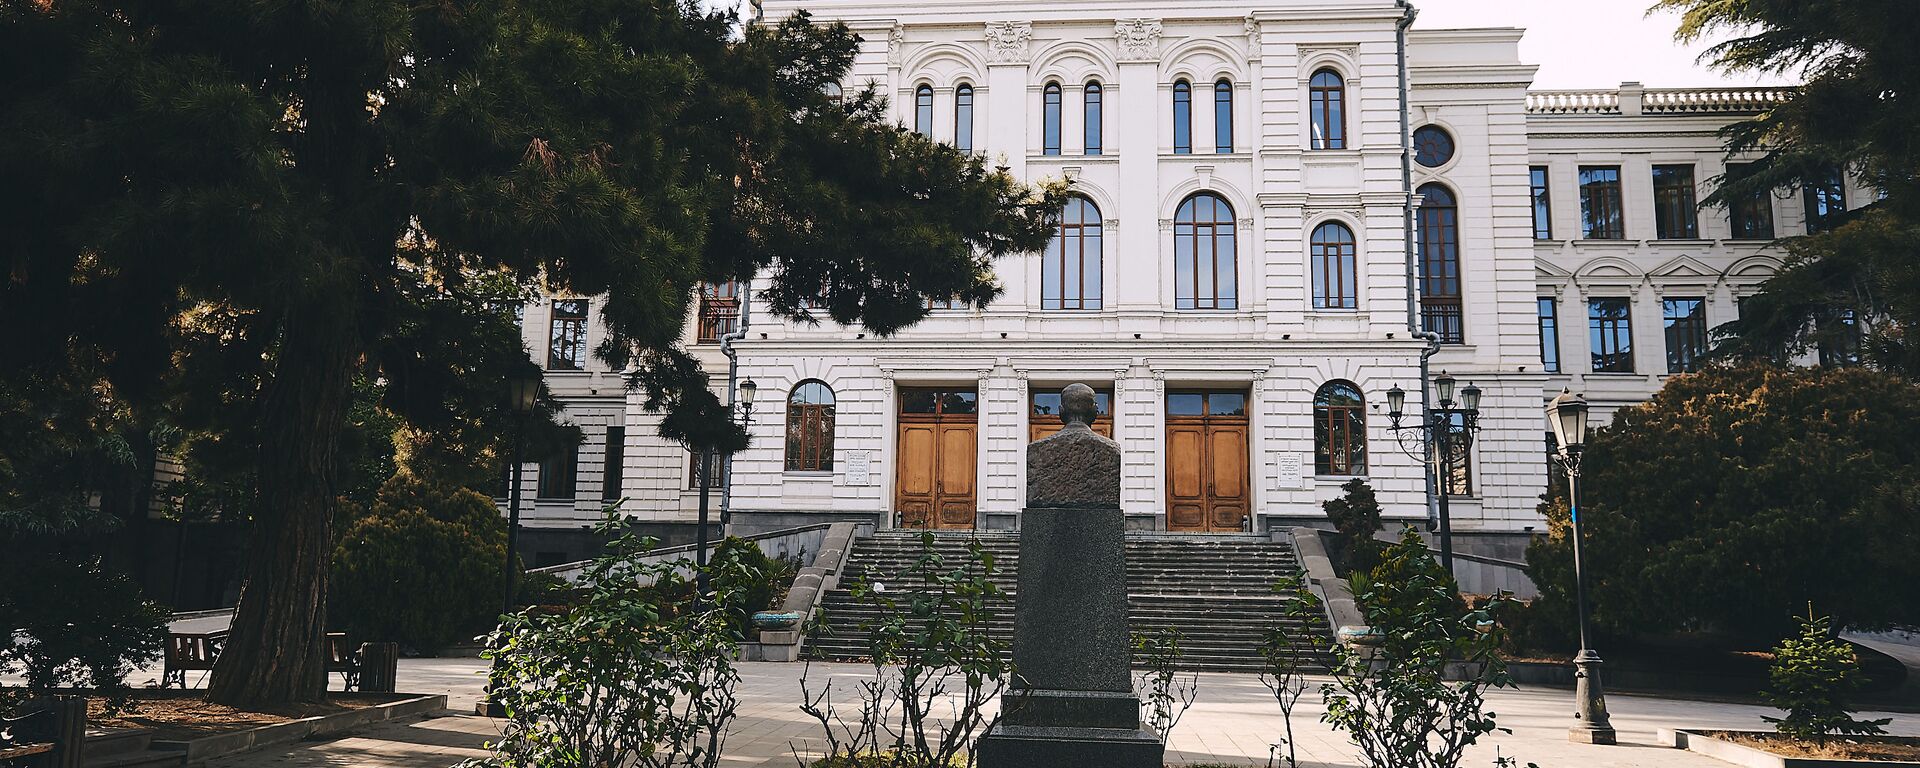 Тбилисский государственный университет - Sputnik Грузия, 1920, 17.06.2021